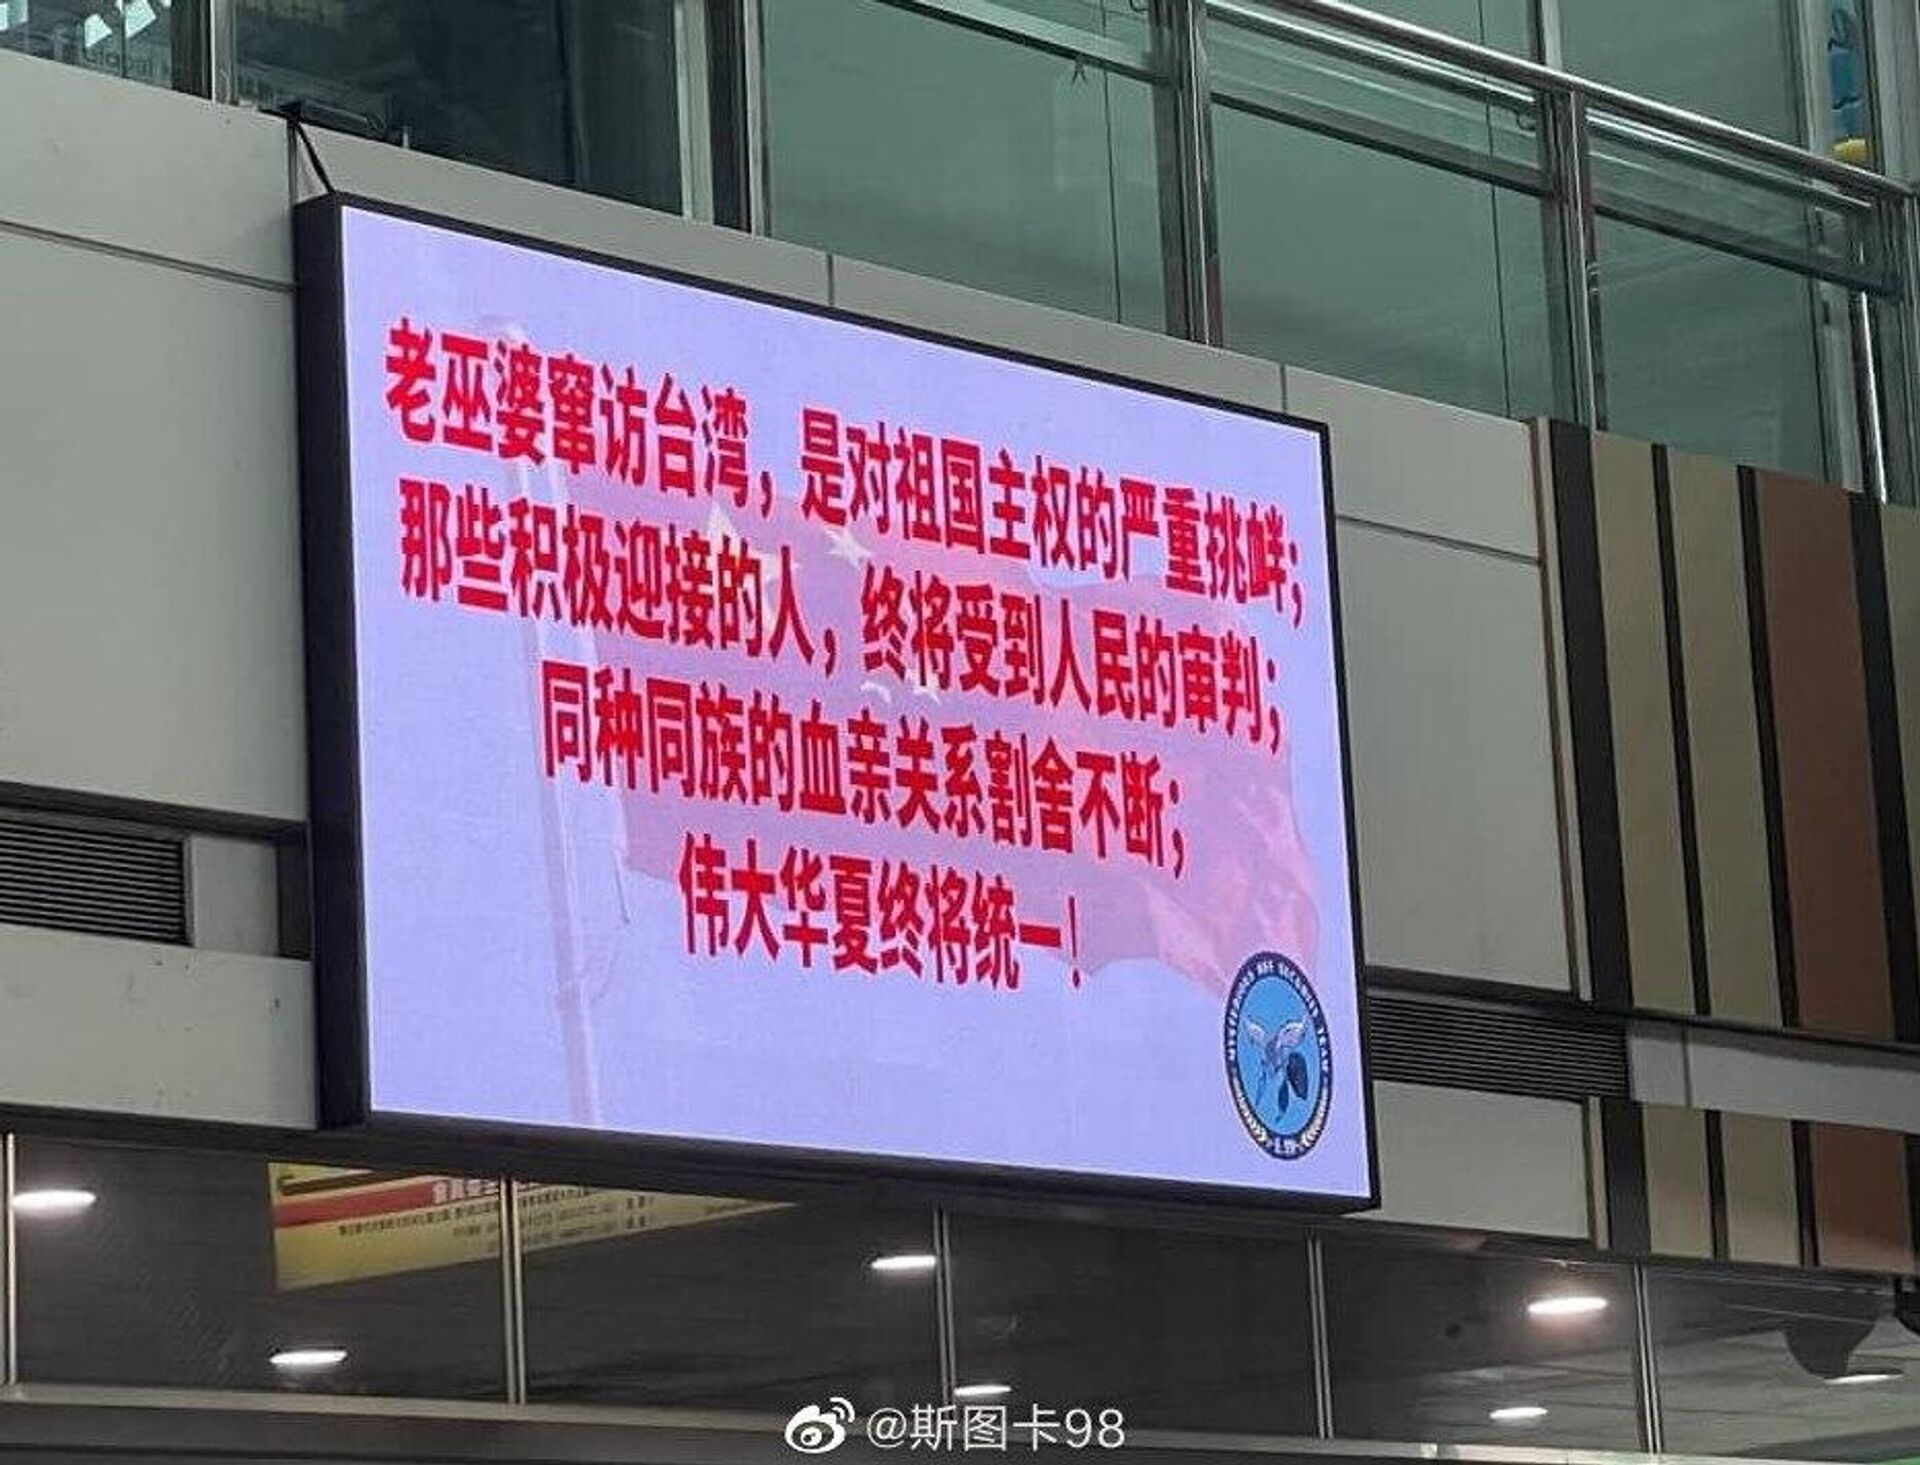 Pantallas de tiendas y estaciones de trenes en la ciudad de Kaohsiung, Taiwán, con acusaciones a Pelosi de socavar la soberanía de China - Sputnik Mundo, 1920, 03.08.2022